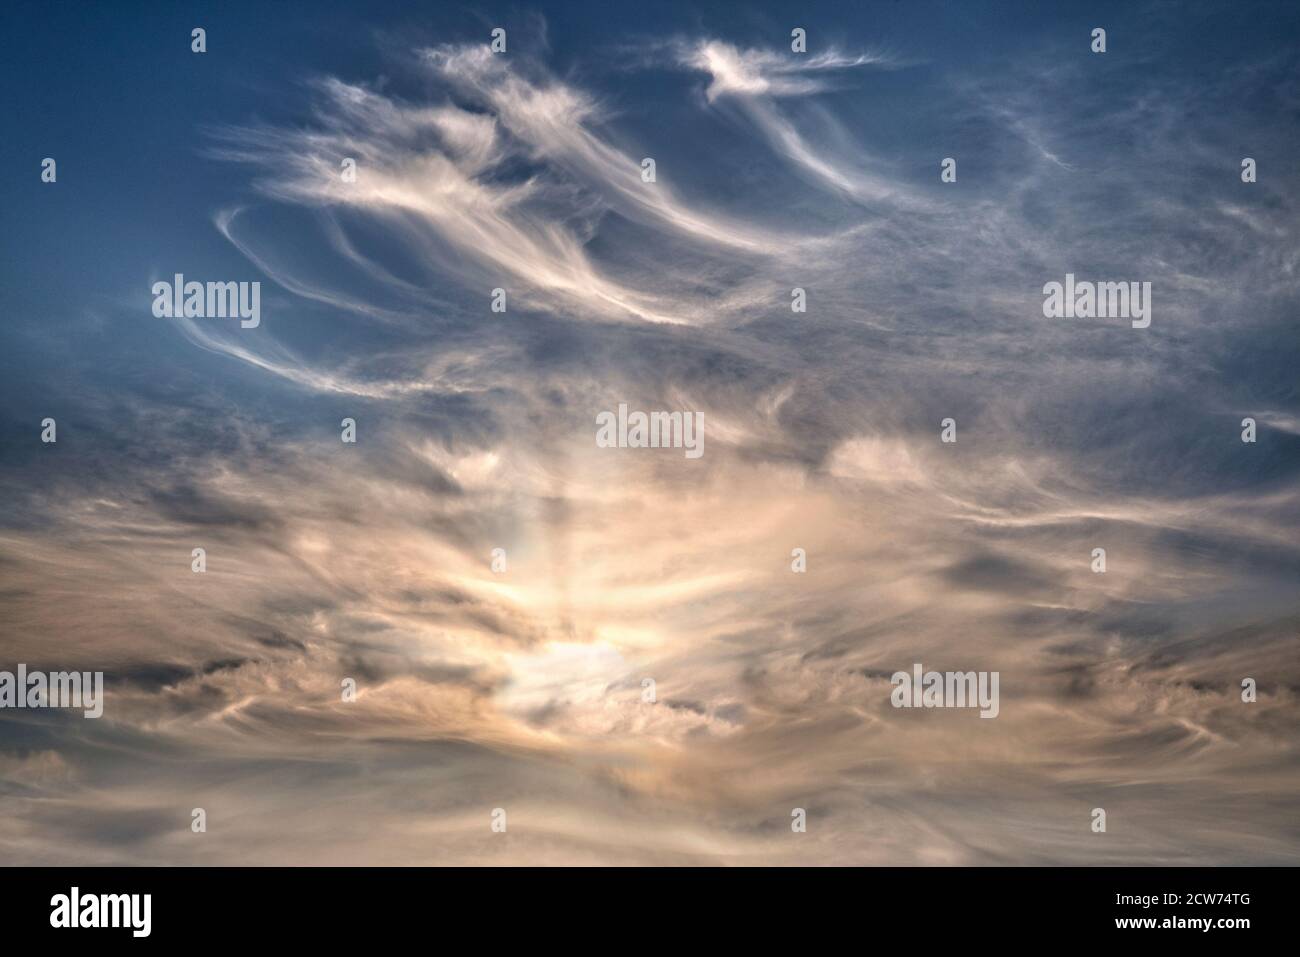 KONZEPTFOTOGRAFIE: Dramatische Wolkenbildung gegen Sonnenlicht Stockfoto